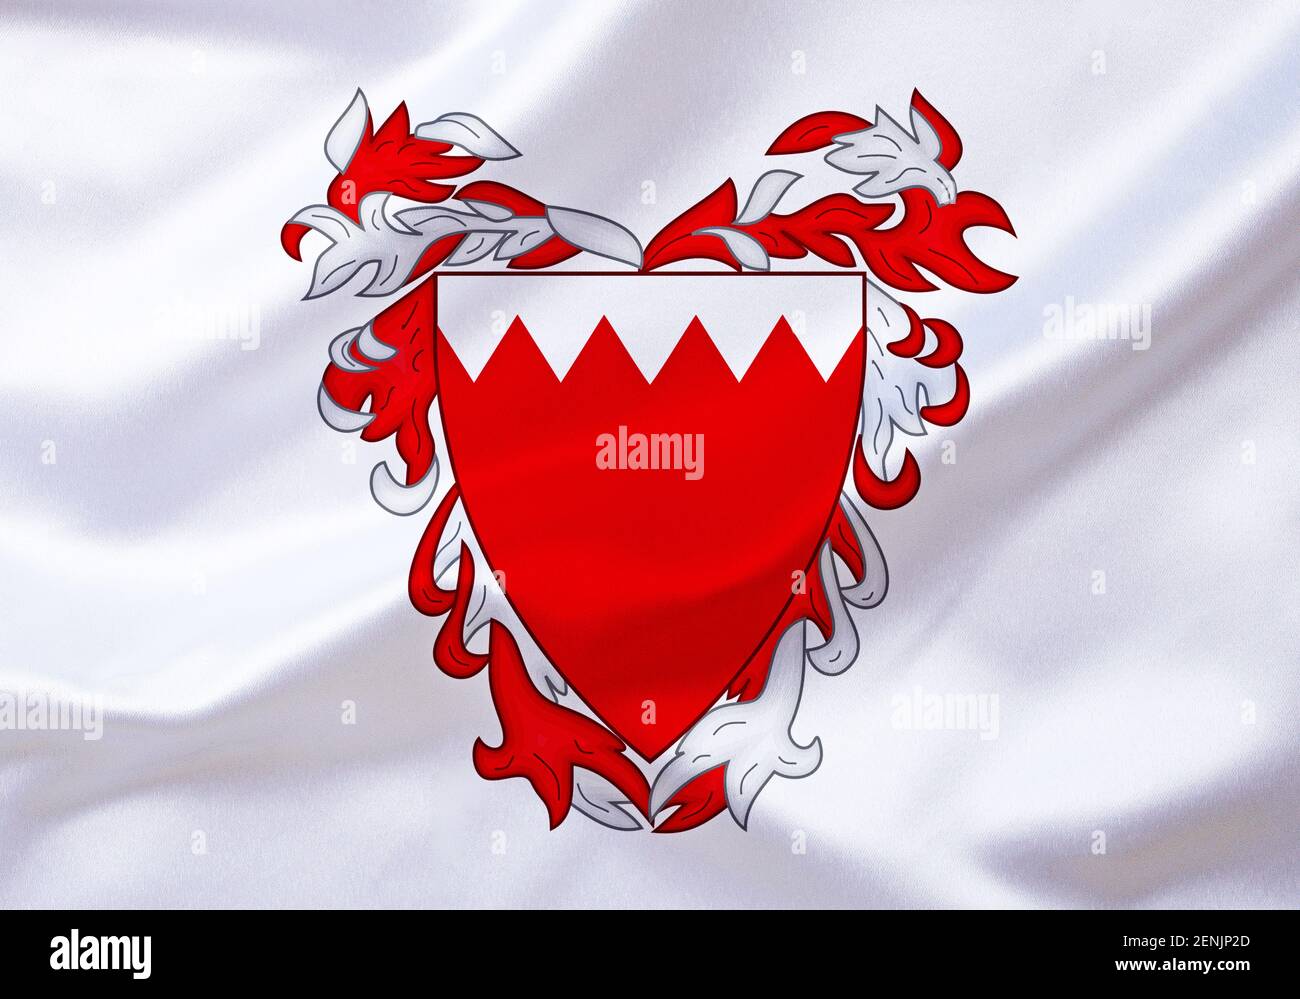 Das Wappen von Bahrain, Land im Mittleren Osten, Stock Photo